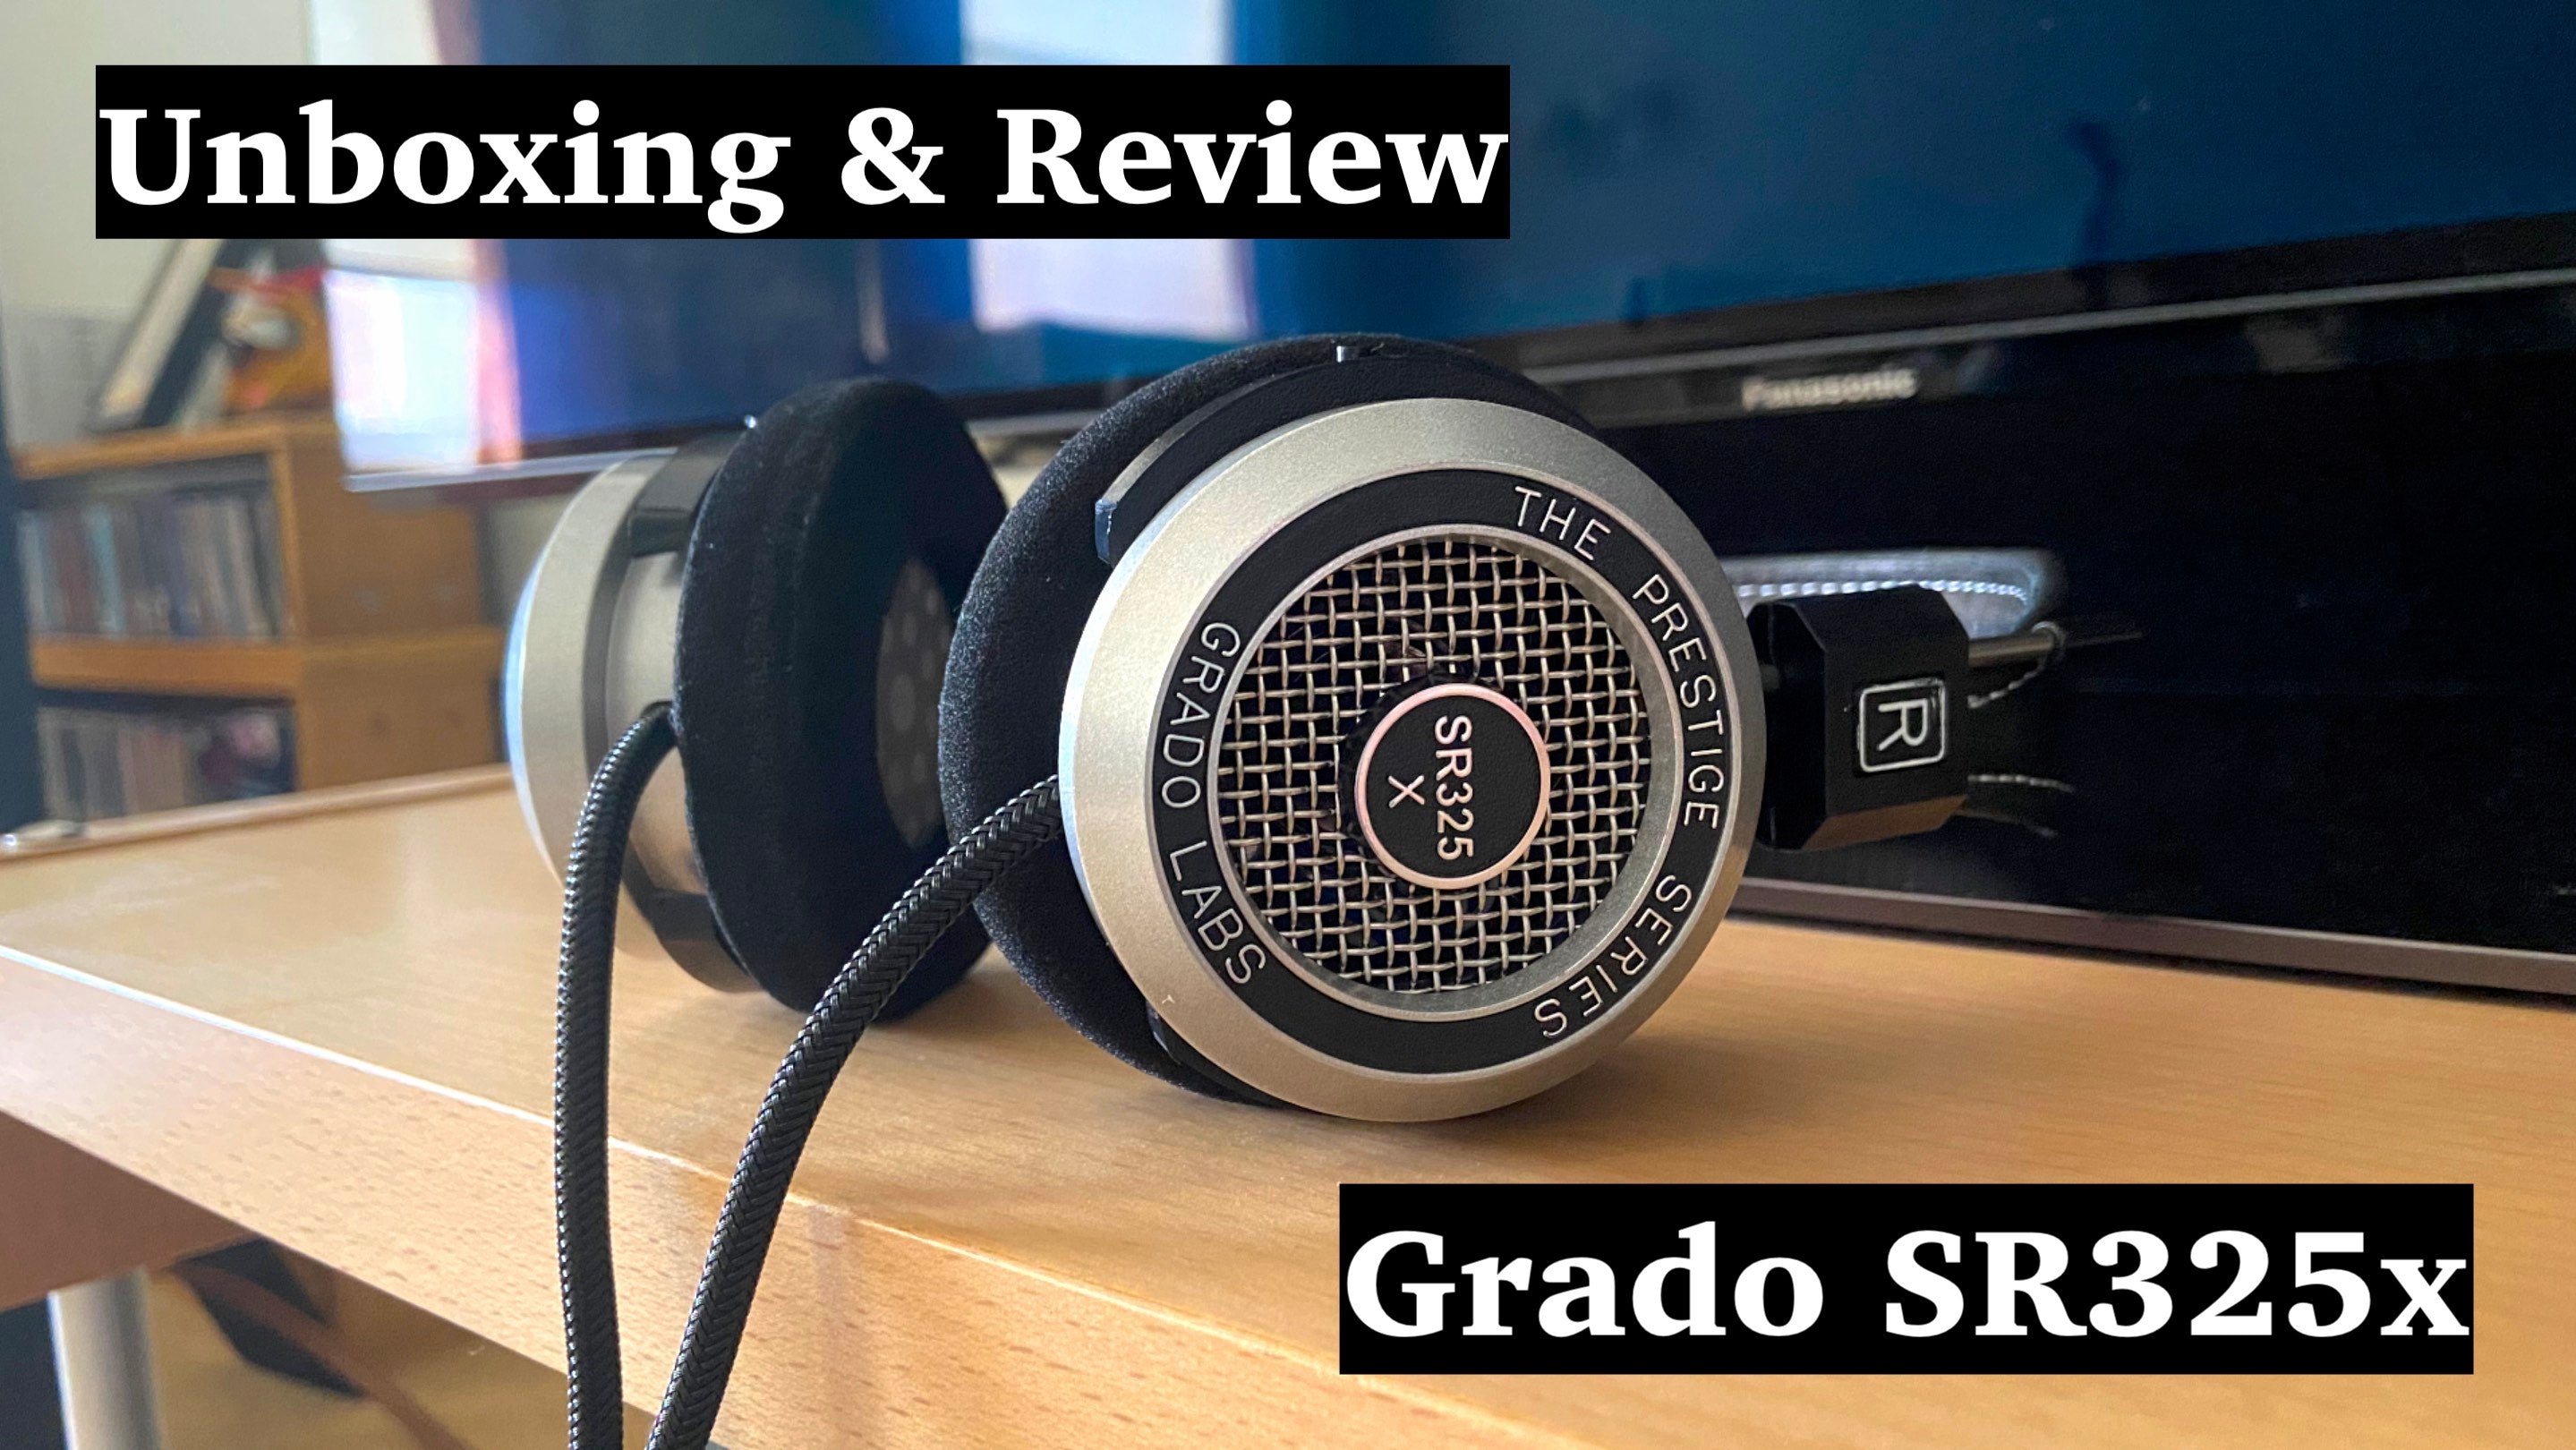 NEW Grado SR325x Hi-Res Headphones | Unboxing & Review